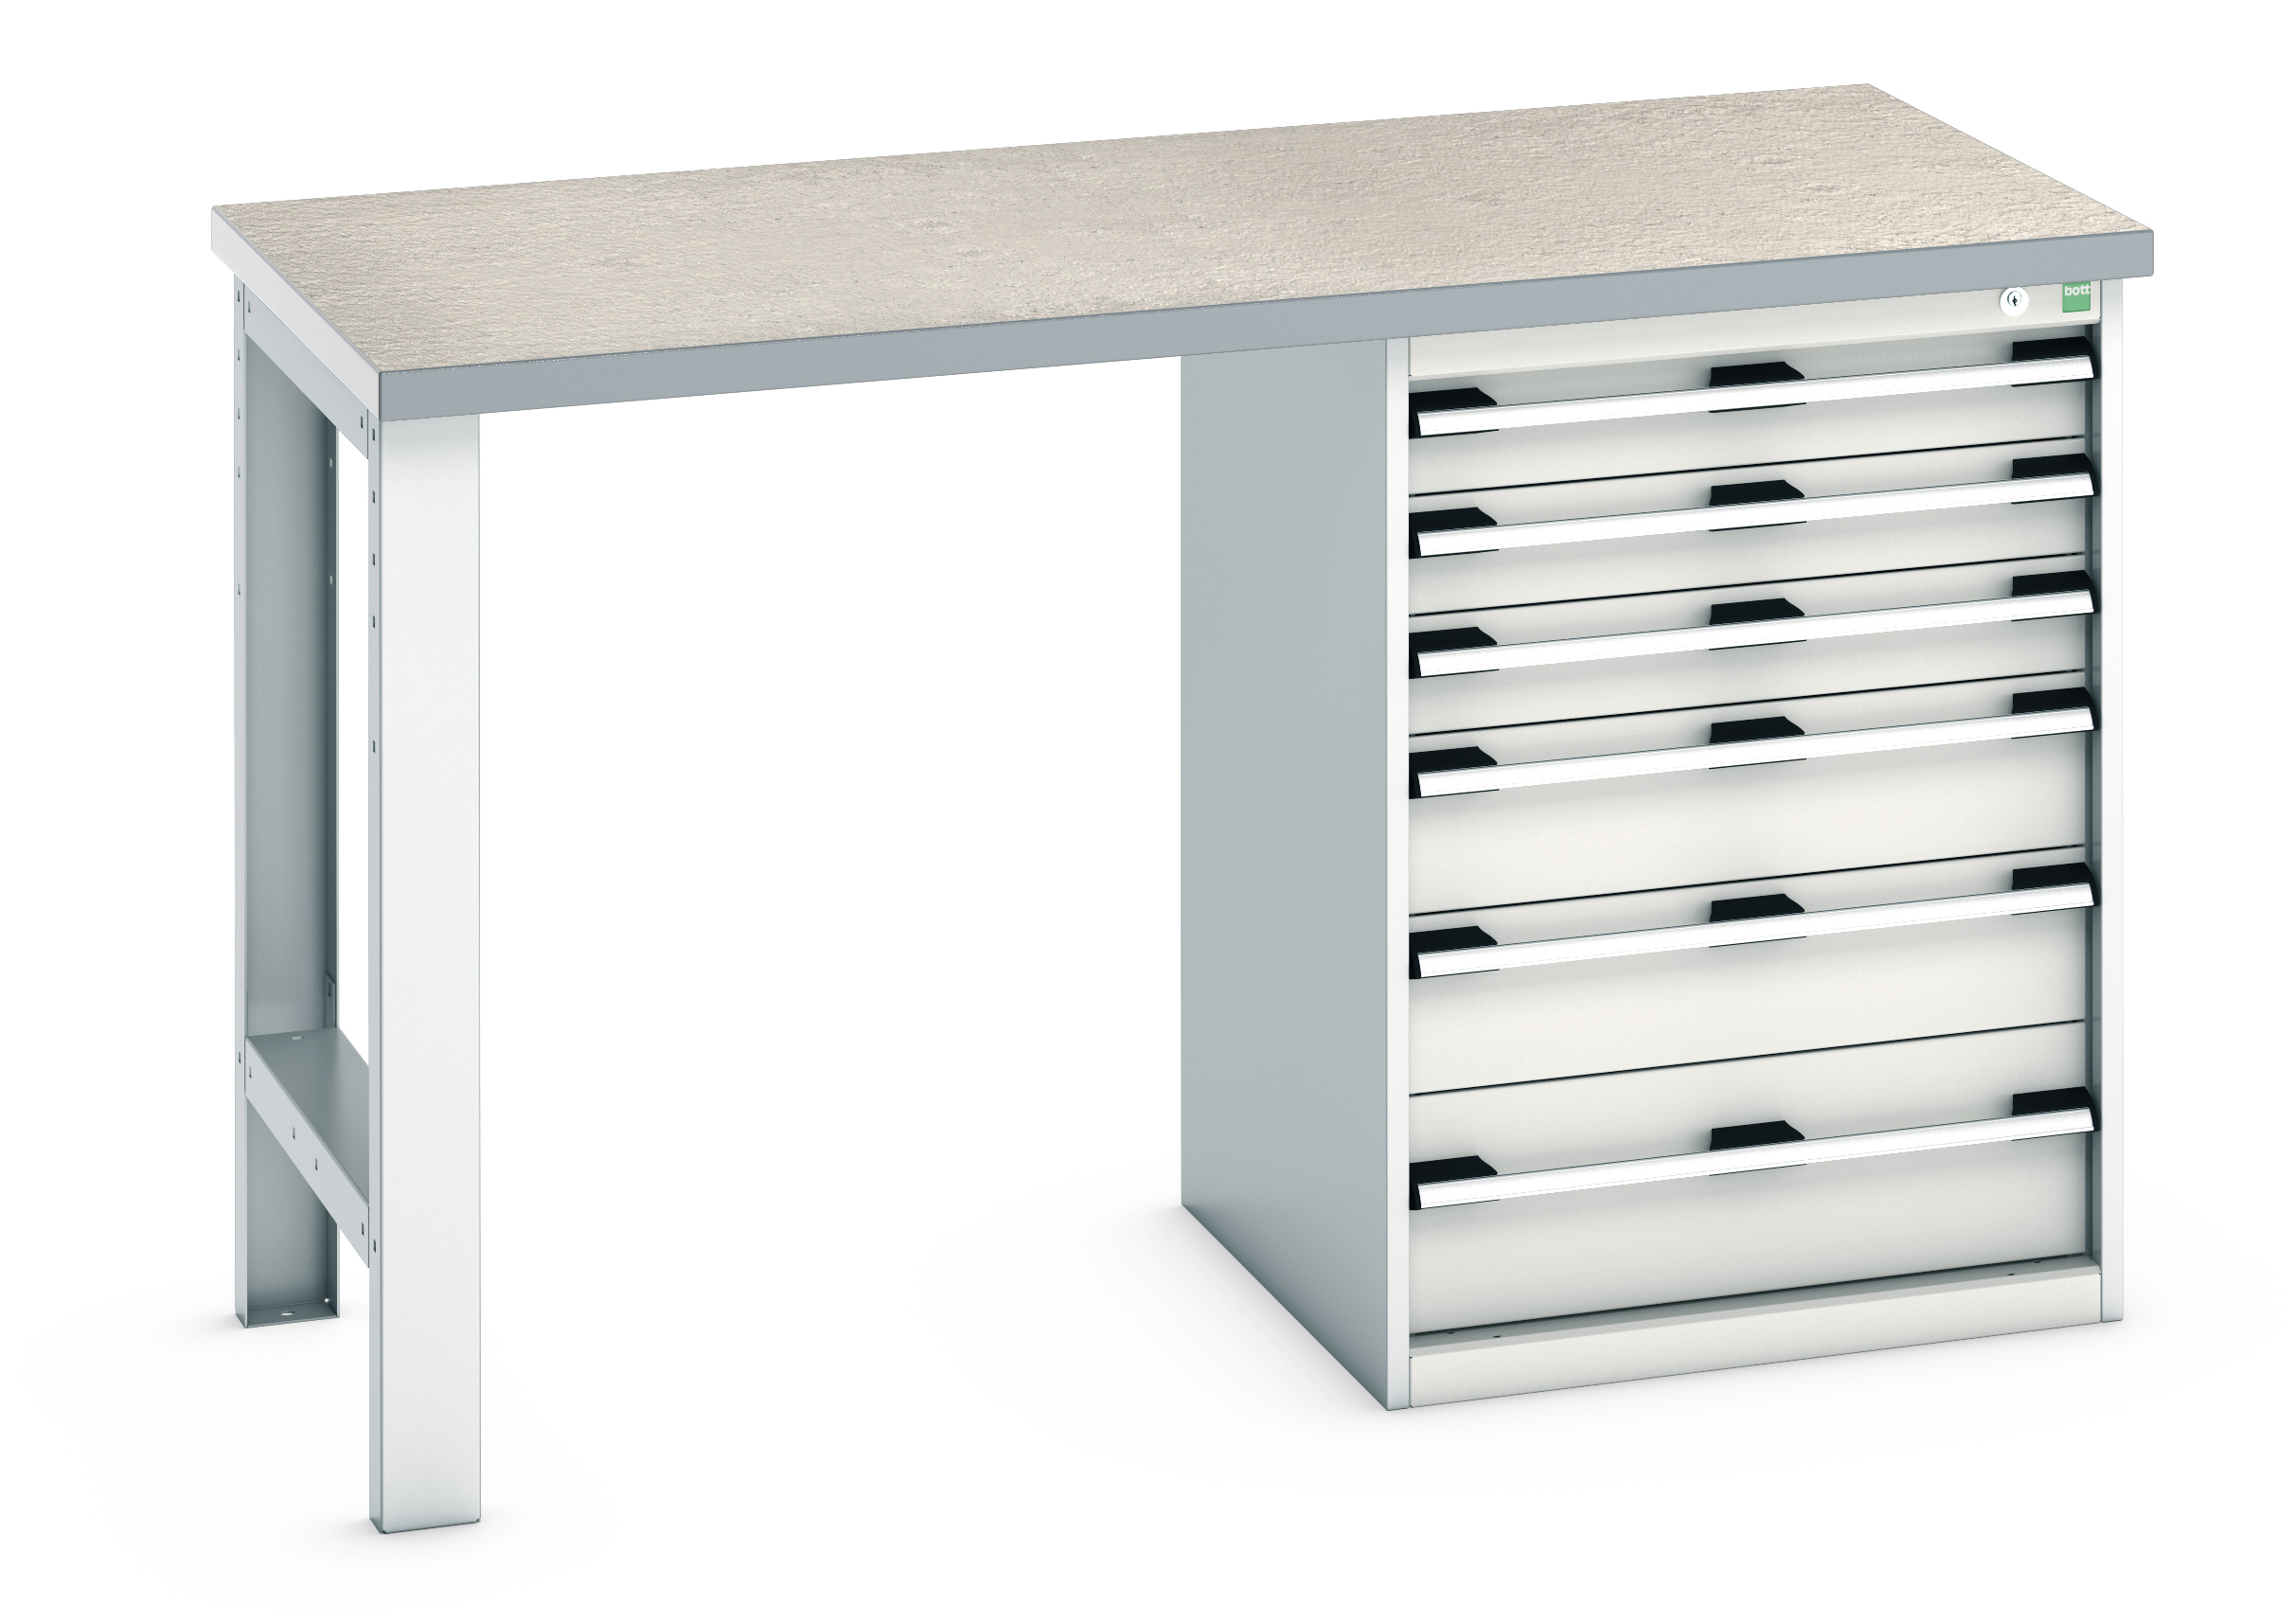 Bott Cubio Pedestal Bench With 6 Drawer Cabinet - 41003493.16V